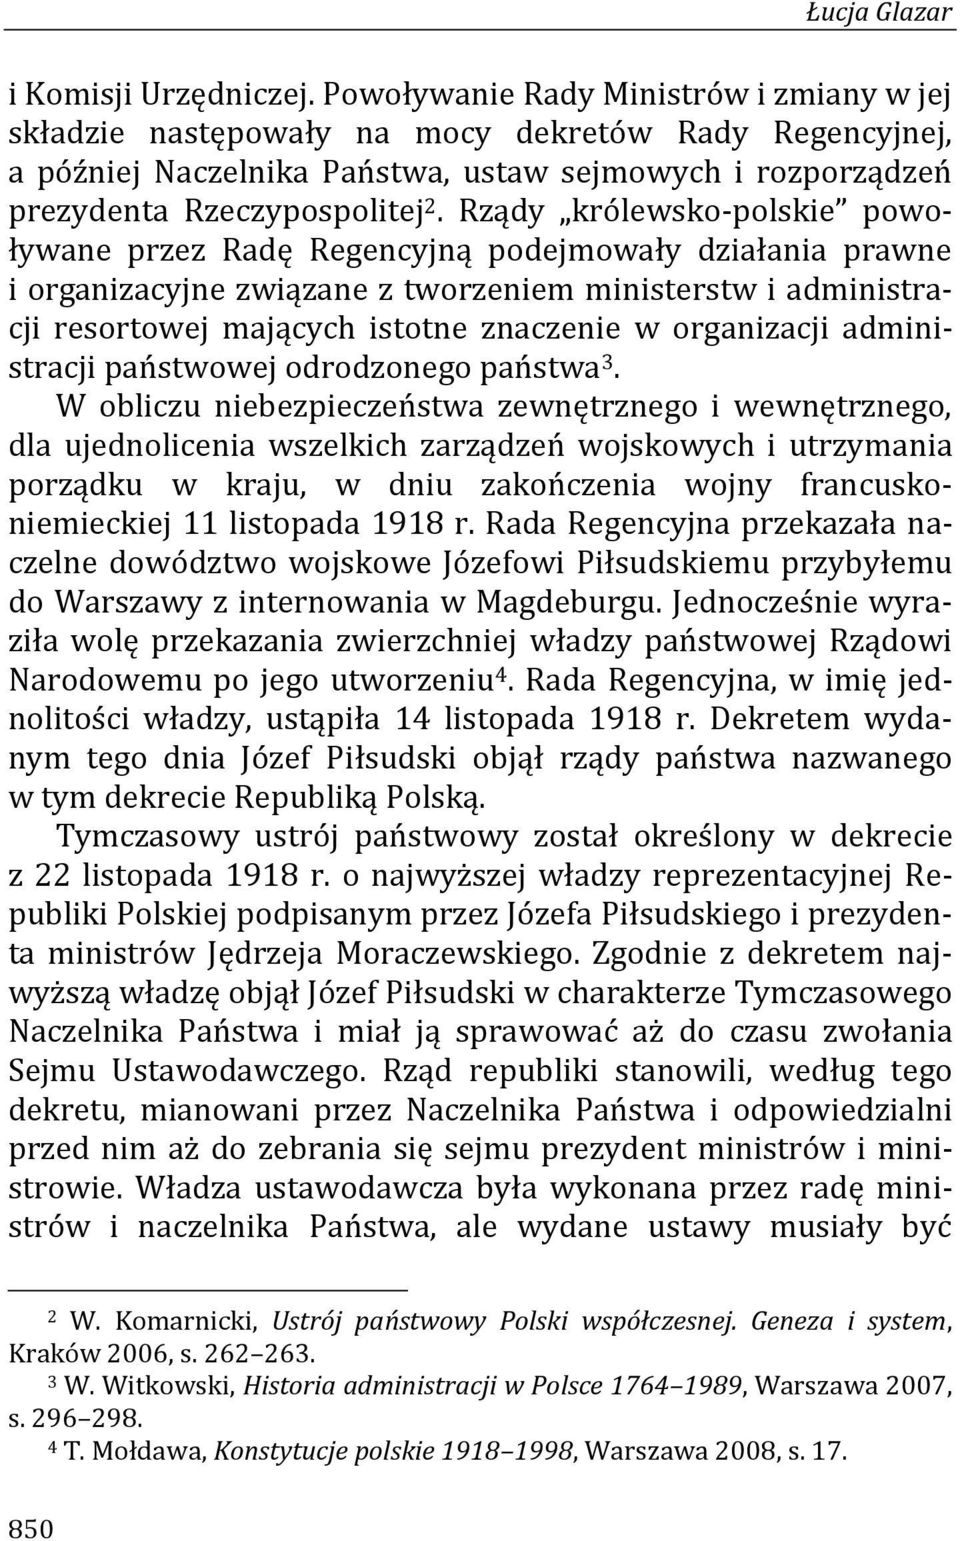 Rządy królewsko-polskie powoływane przez Radę Regencyjną podejmowały działania prawne i organizacyjne związane z tworzeniem ministerstw i administracji resortowej mających istotne znaczenie w